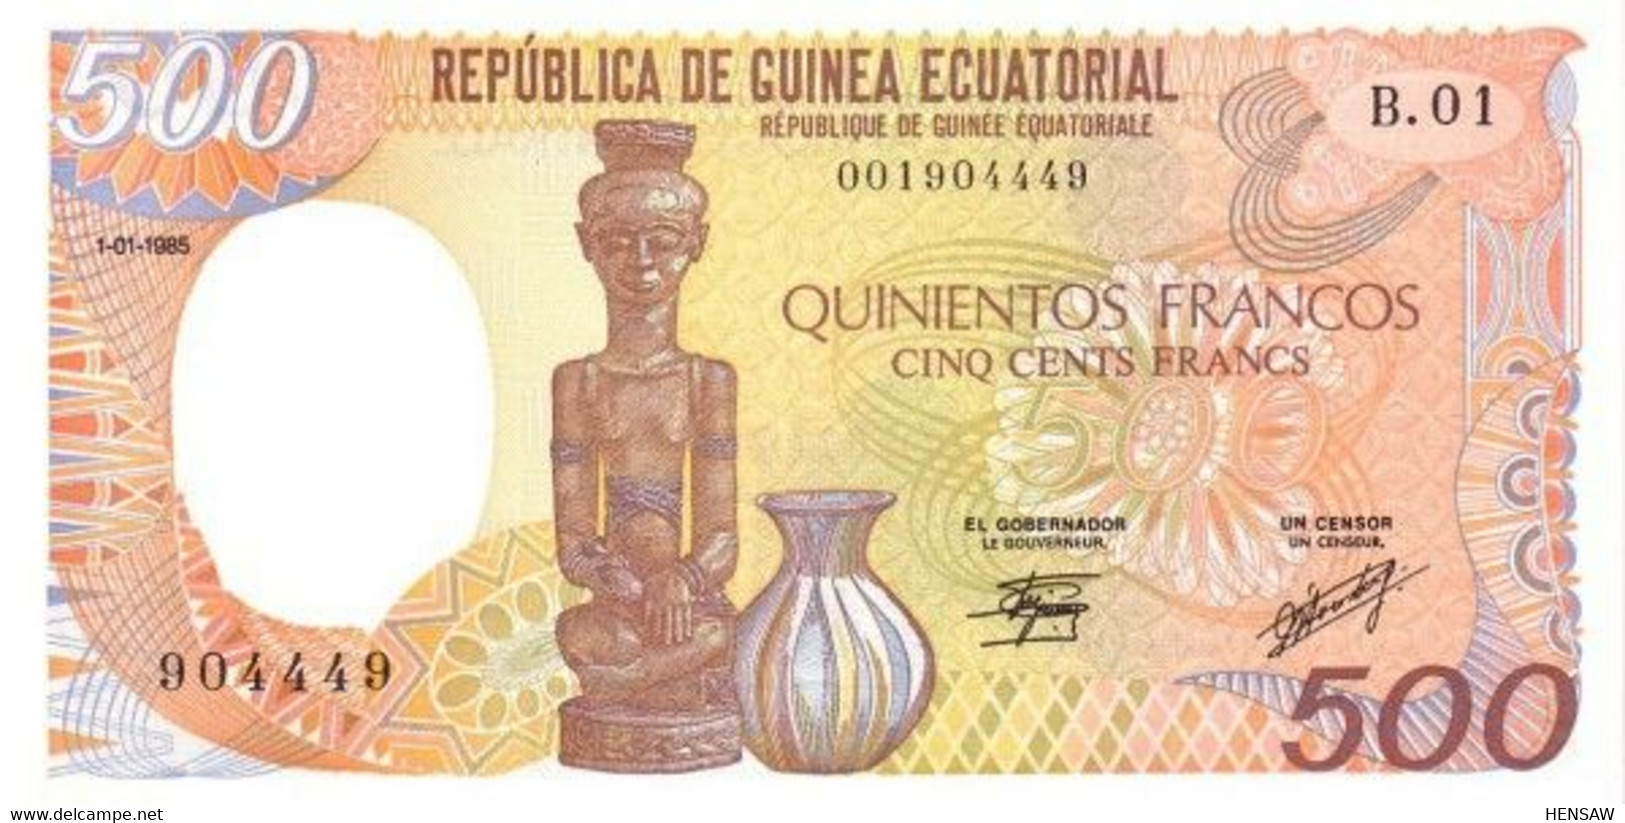 EQUATORIAL GUINEA 500 FRANCS 1985 P 20 UNC SC NUEVO - Equatoriaal-Guinea